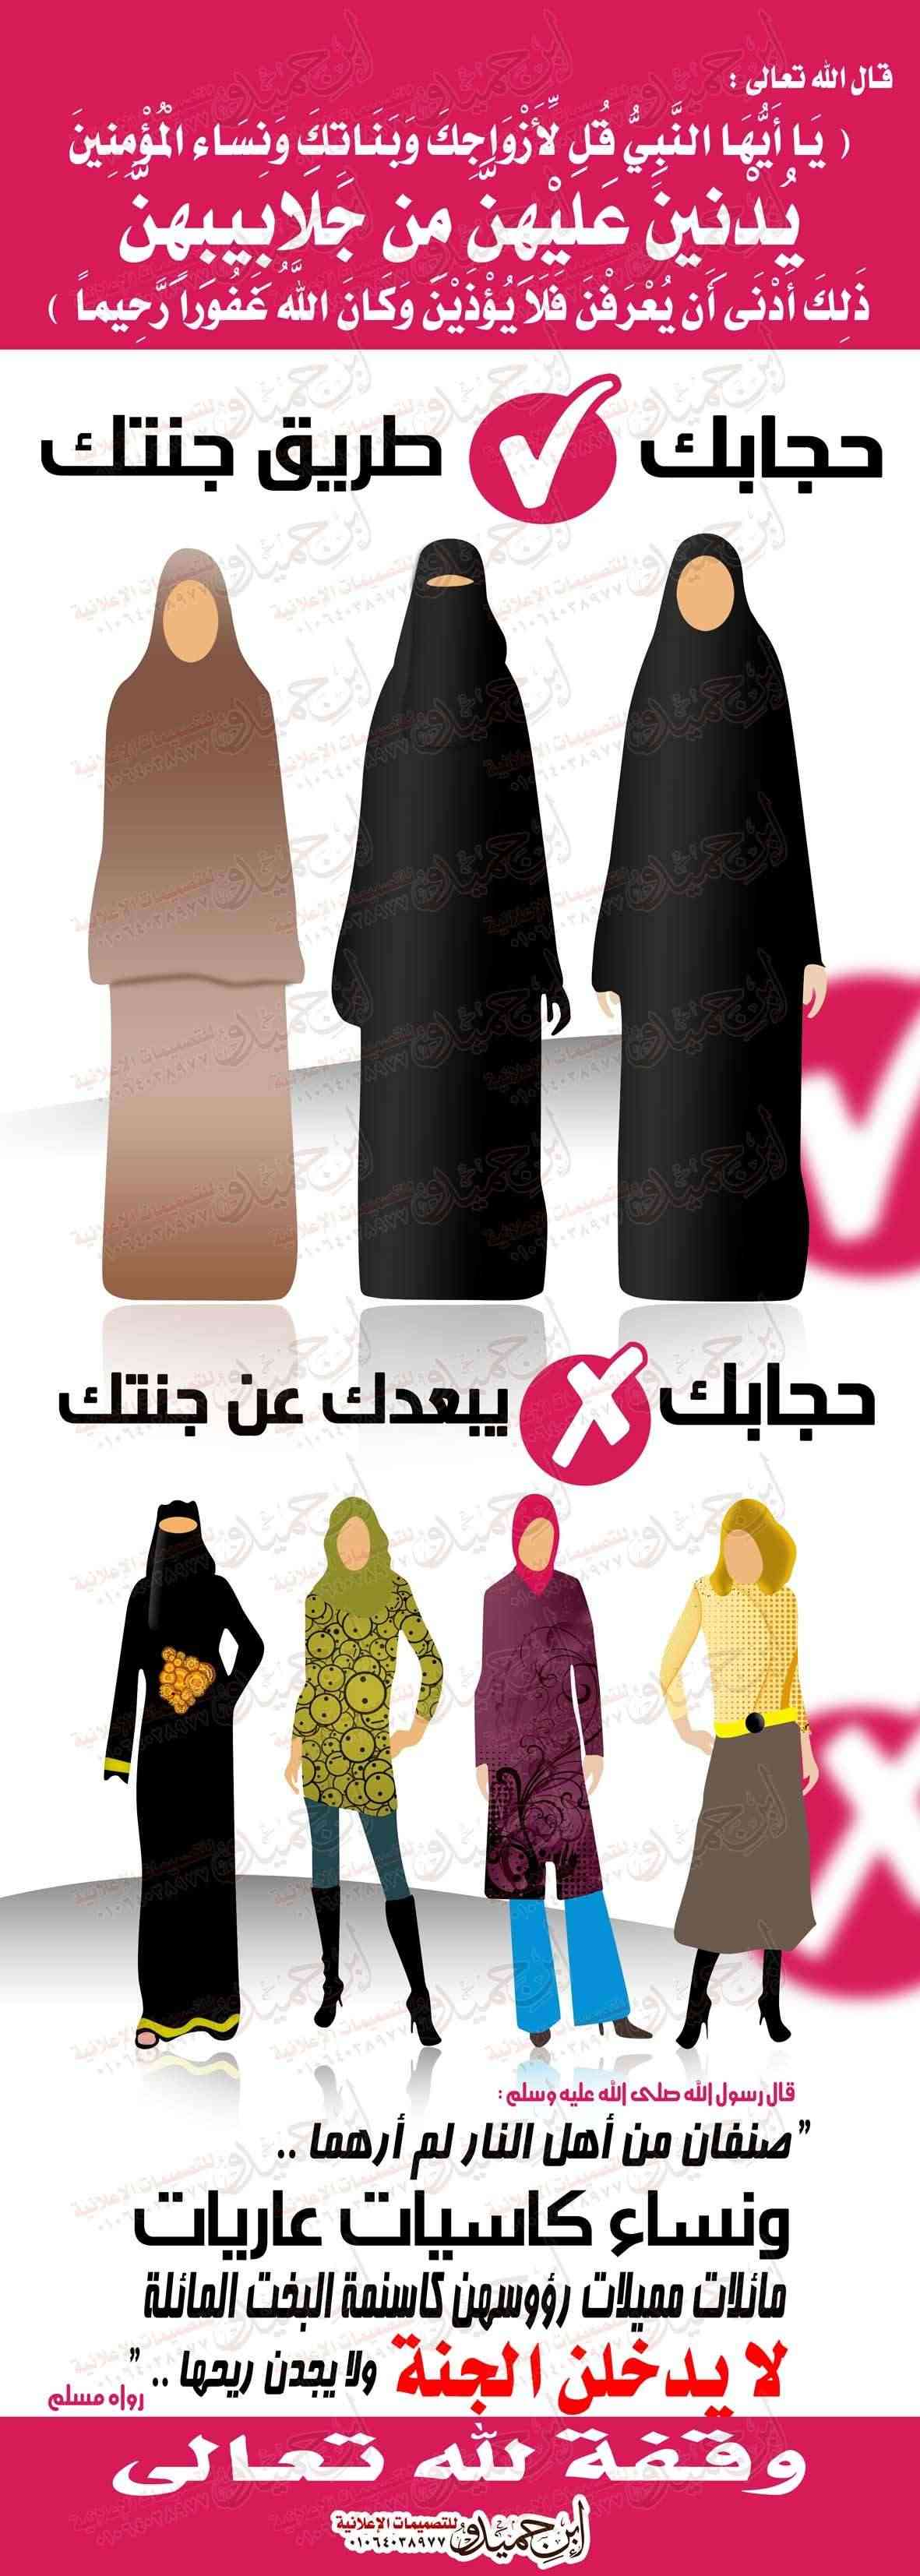 تصميم حجابك طريق جنتك - الدعوة السلفية - ابن حميدو لتصميمات الفوتوشوب 350_1210